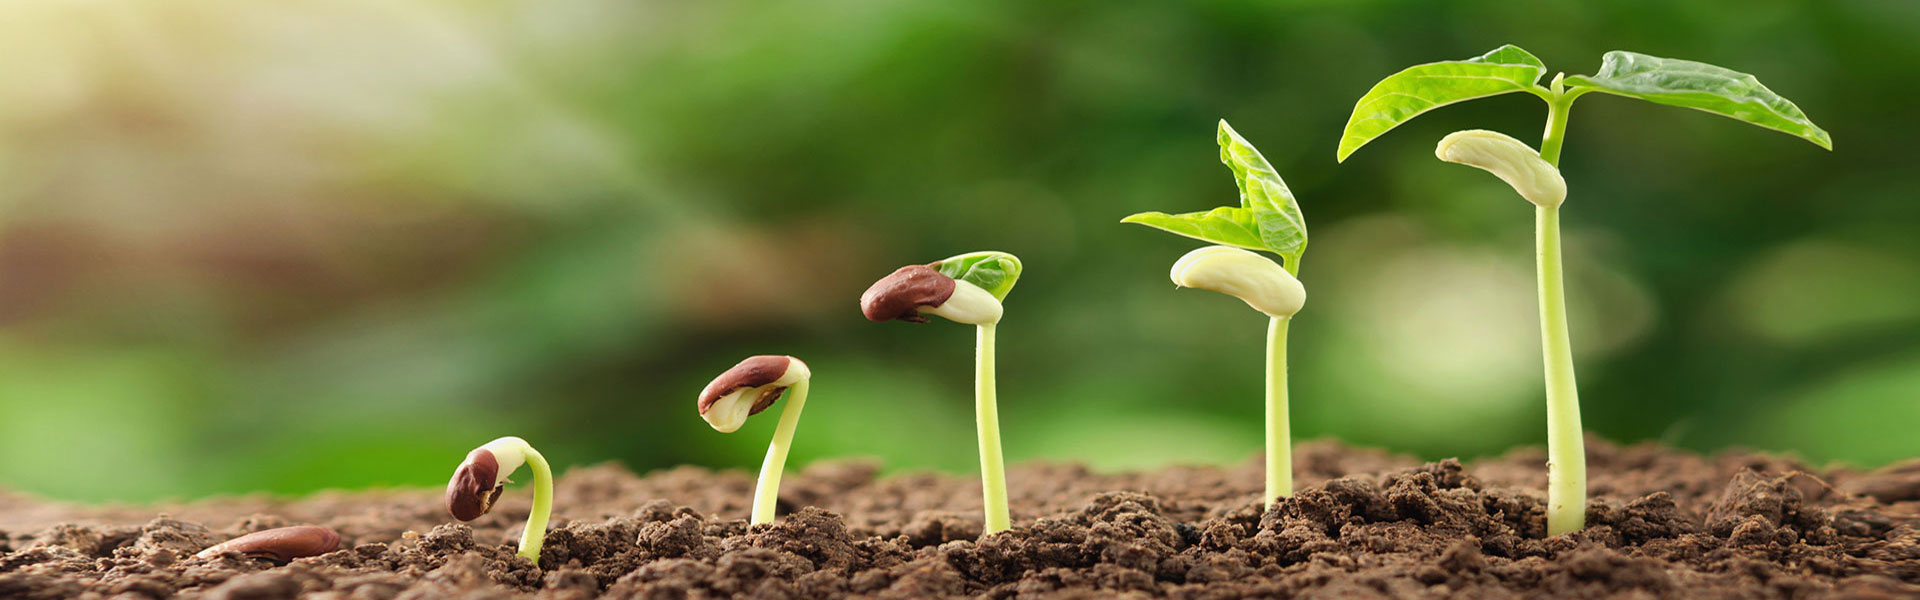 Lebenszyklus einer Pflanze: Wachstum und Gedeihung eines Samenkorns 